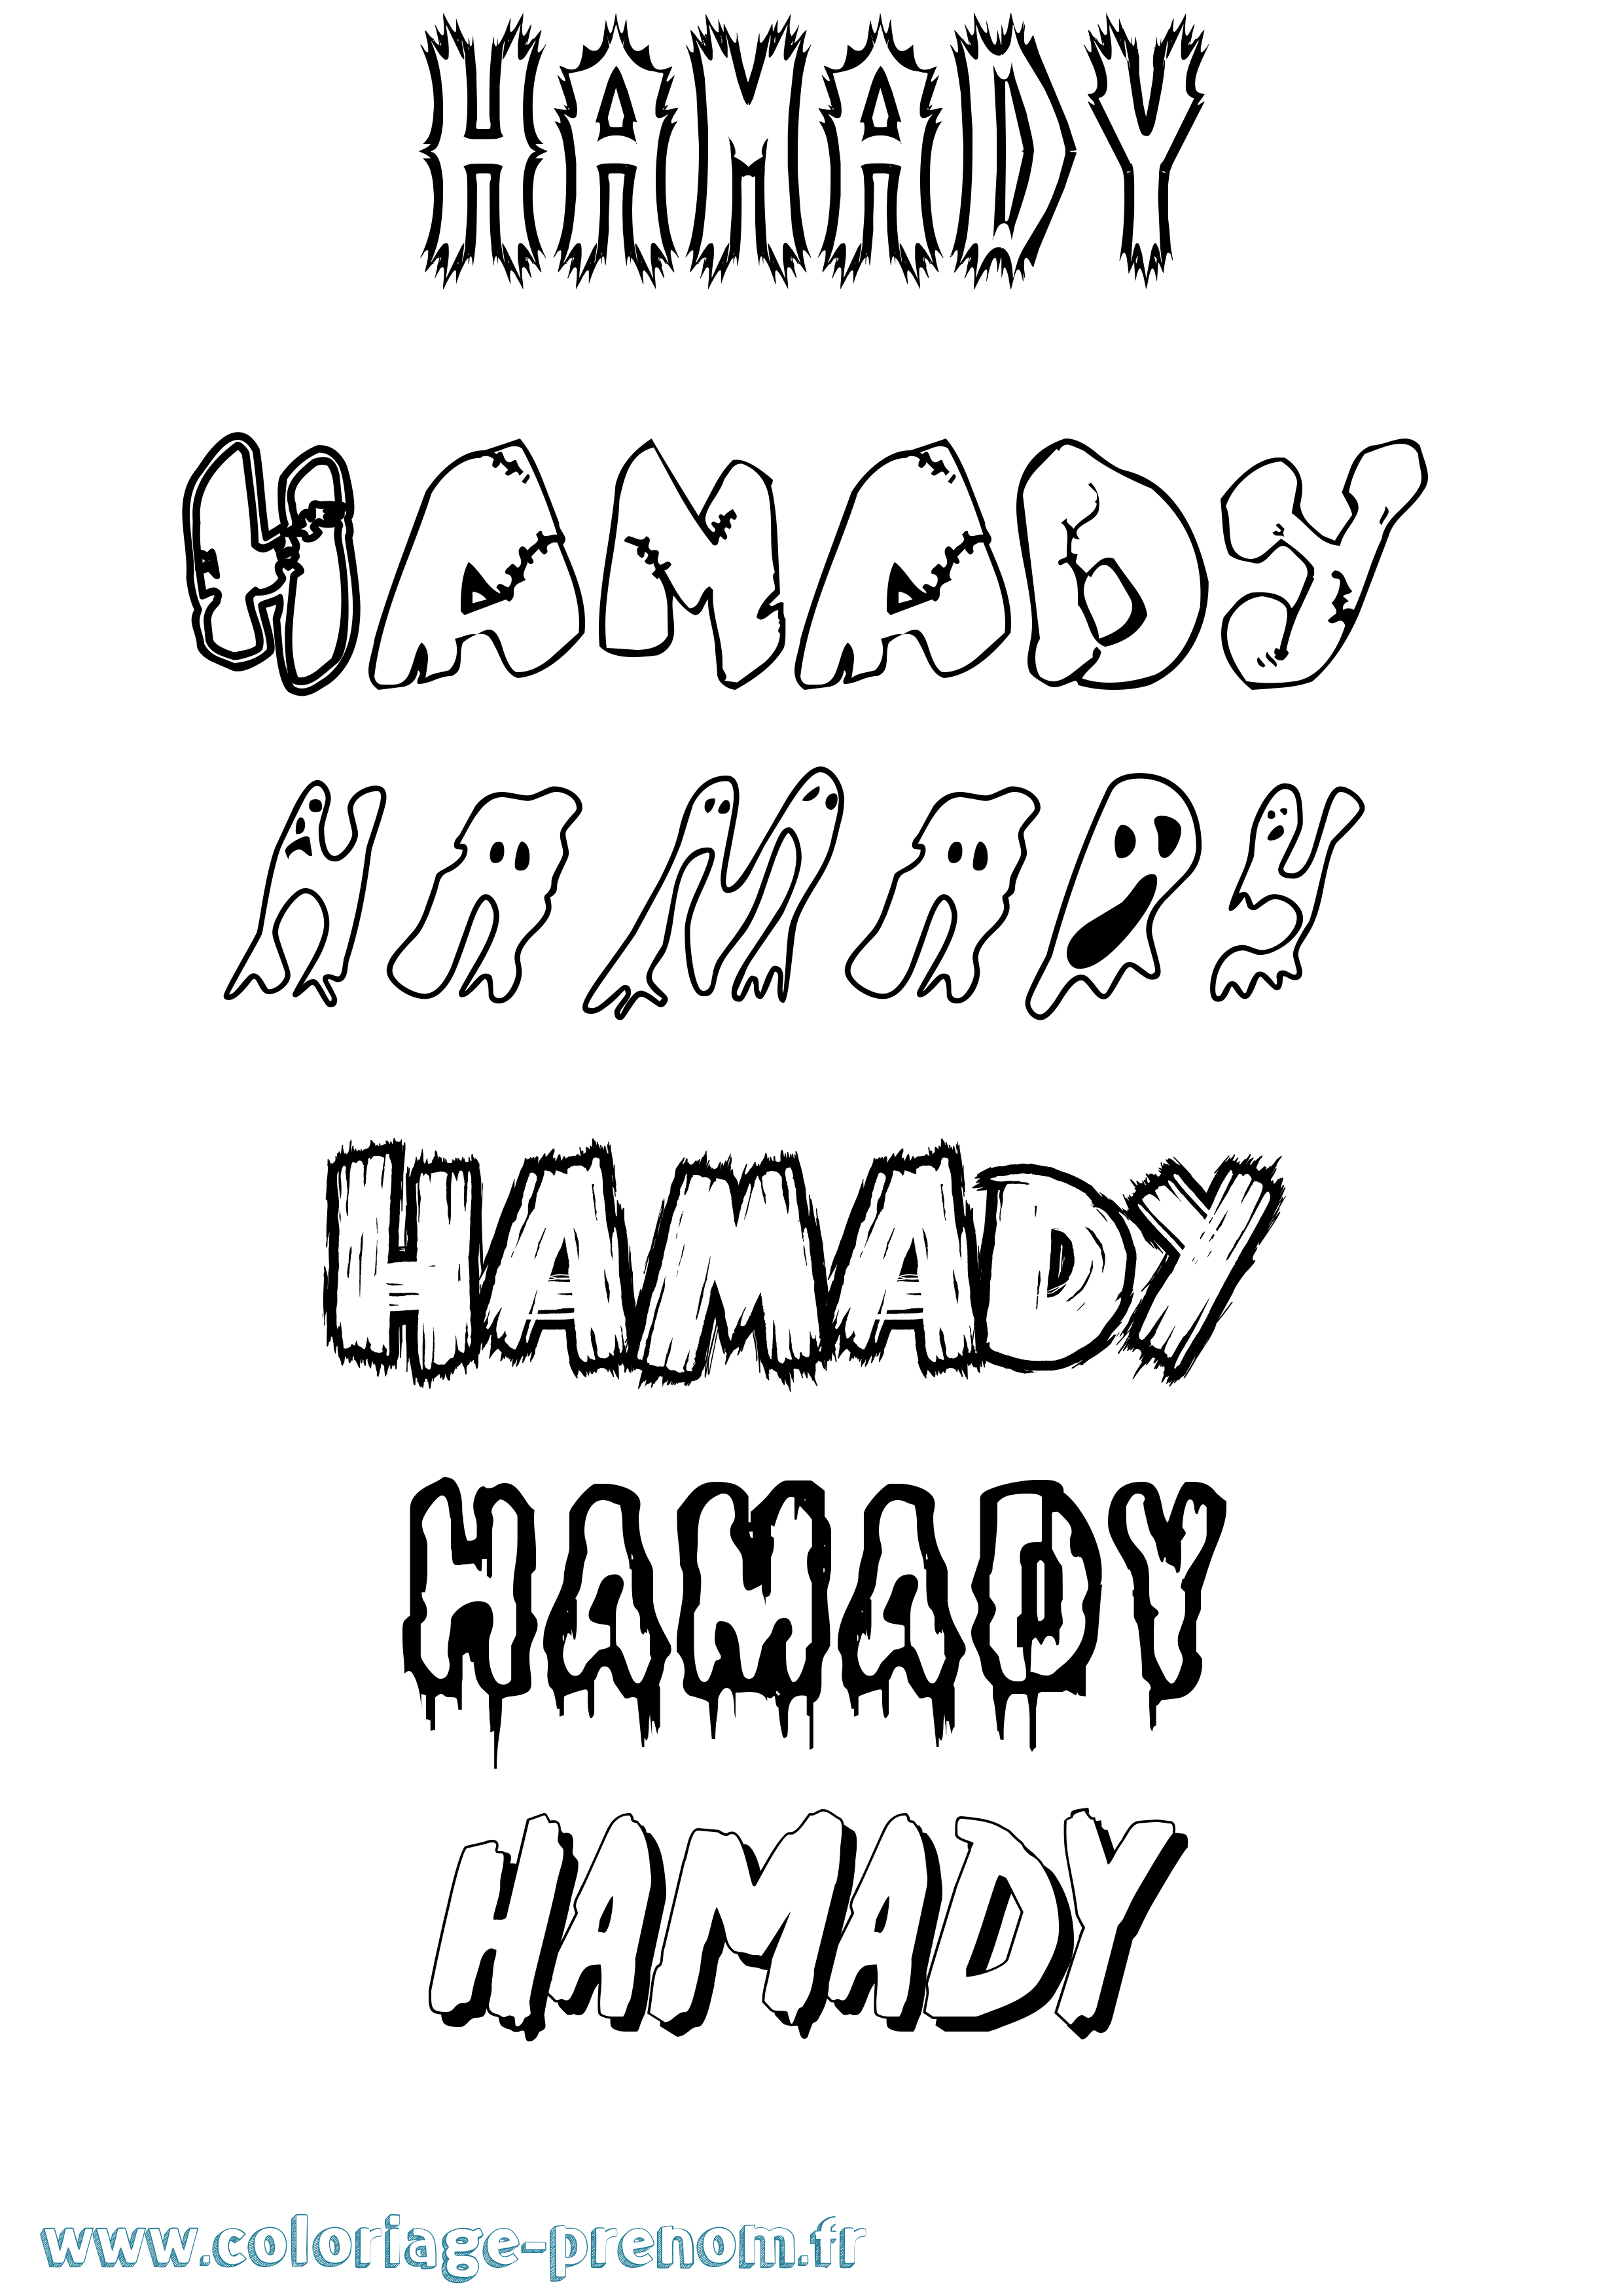 Coloriage prénom Hamady Frisson